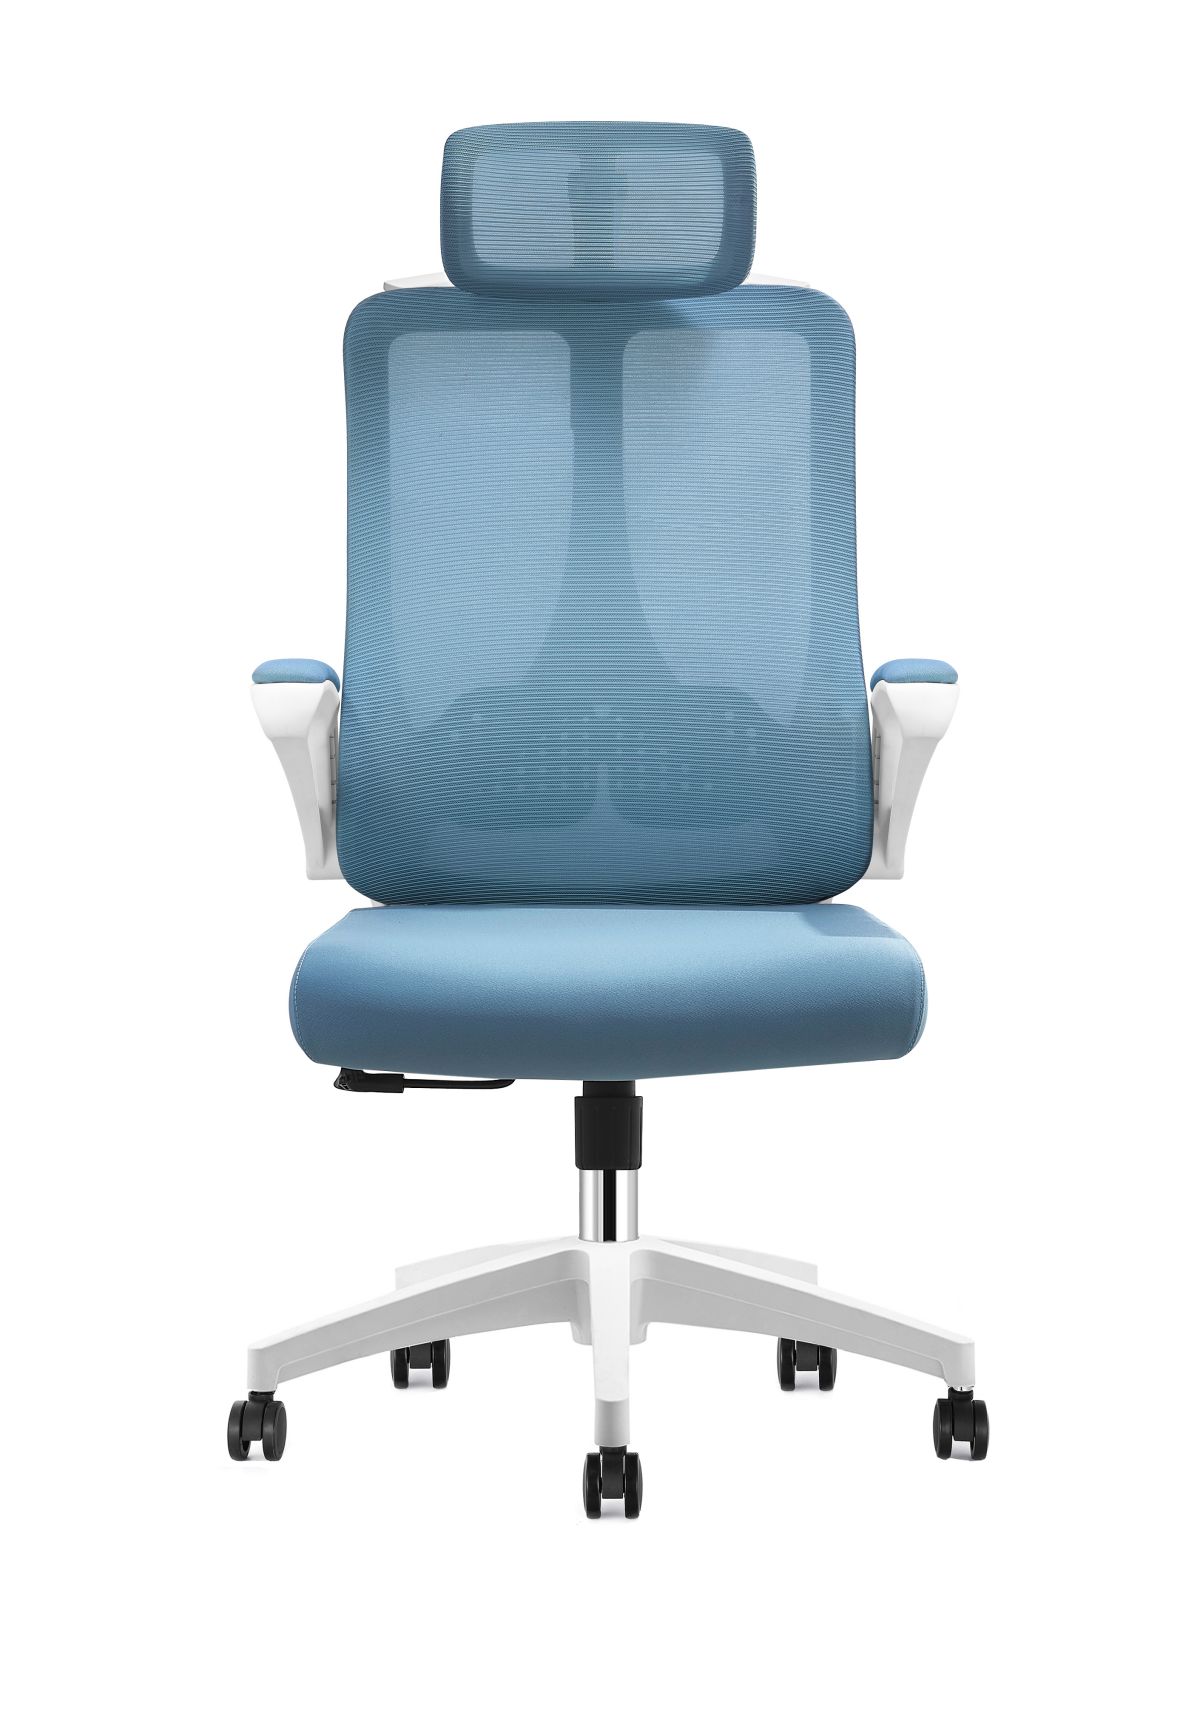 Amazon Mesh գրասենյակային աթոռ 2